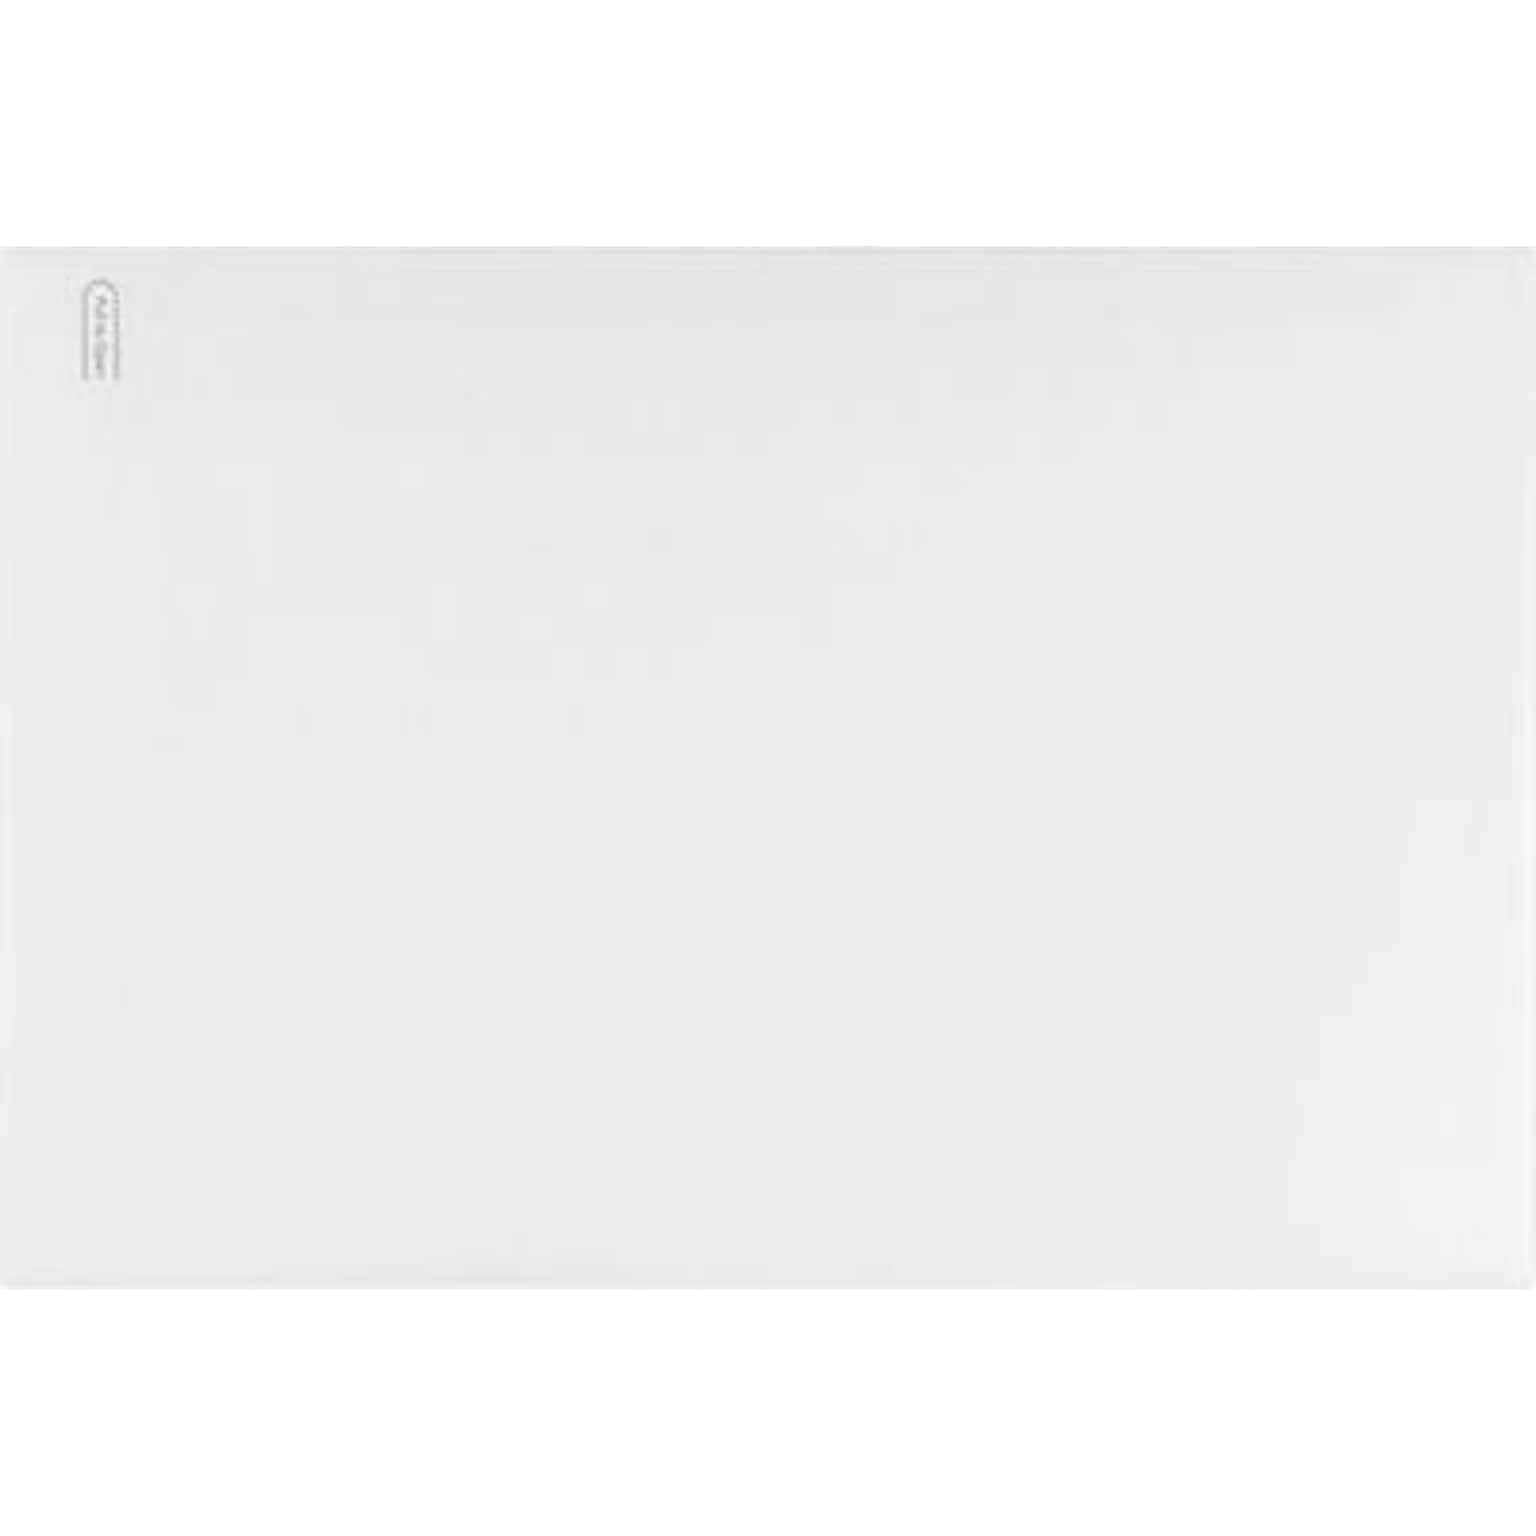 LUX 6 x 9 Booklet Envelopes 500/Box) 500/Box, 24lb. White